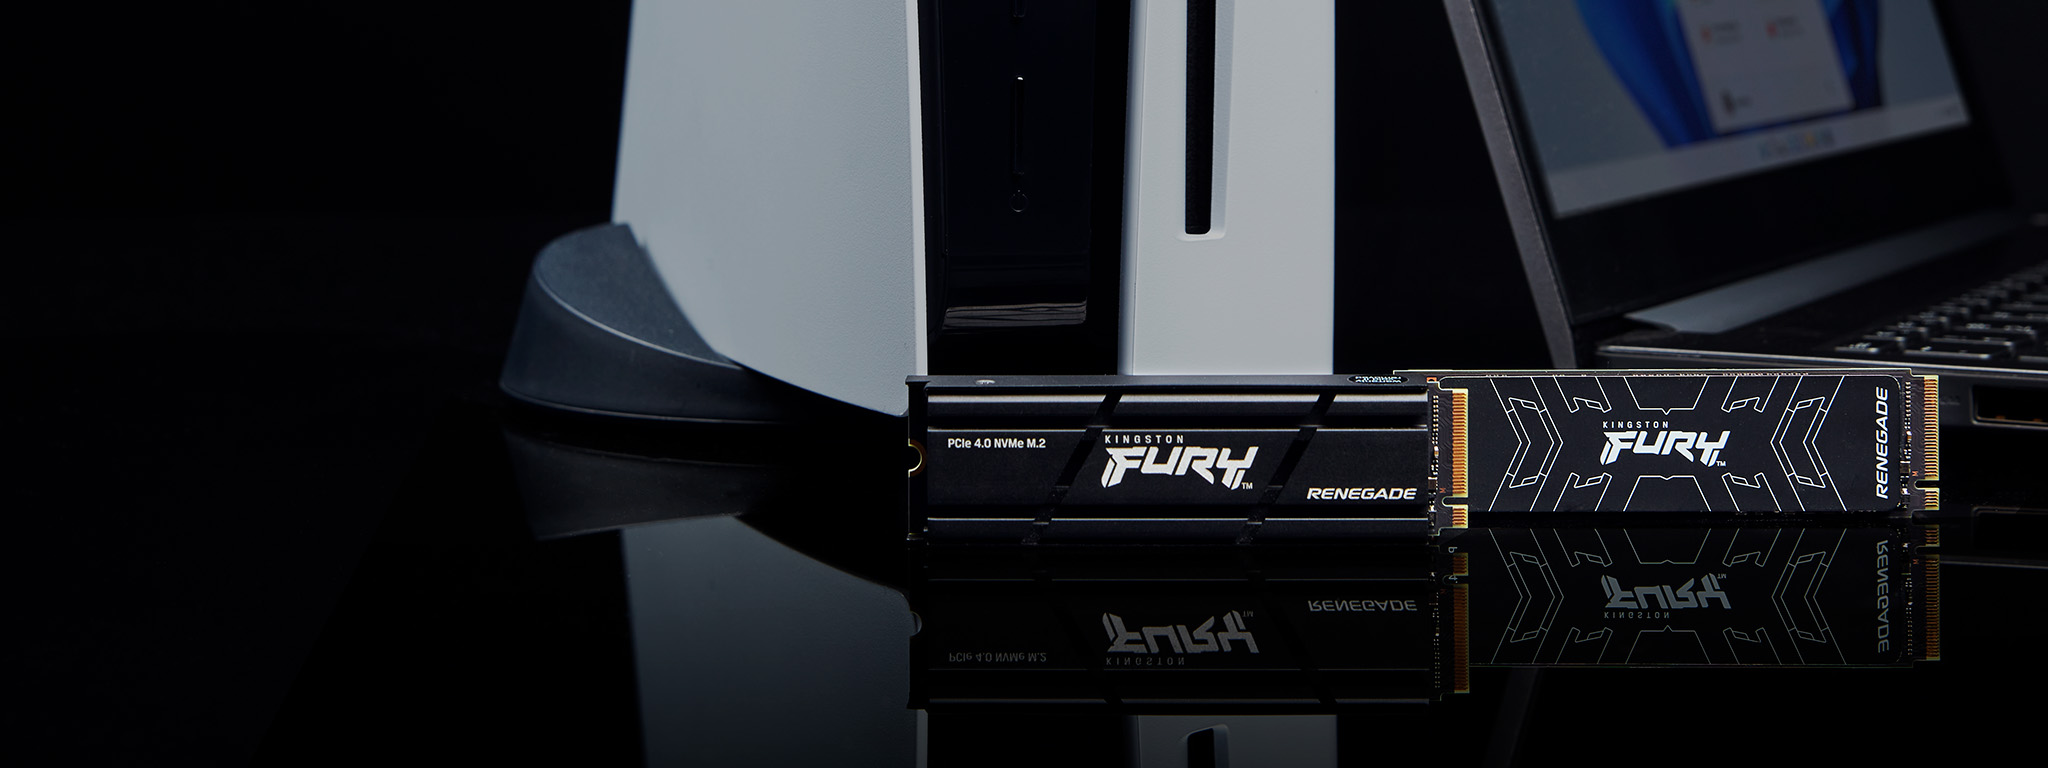 Dois SSDs Kingston FURY Renegade, com e sem dissipador de calor, ao lado de um PS5 e de um laptop.